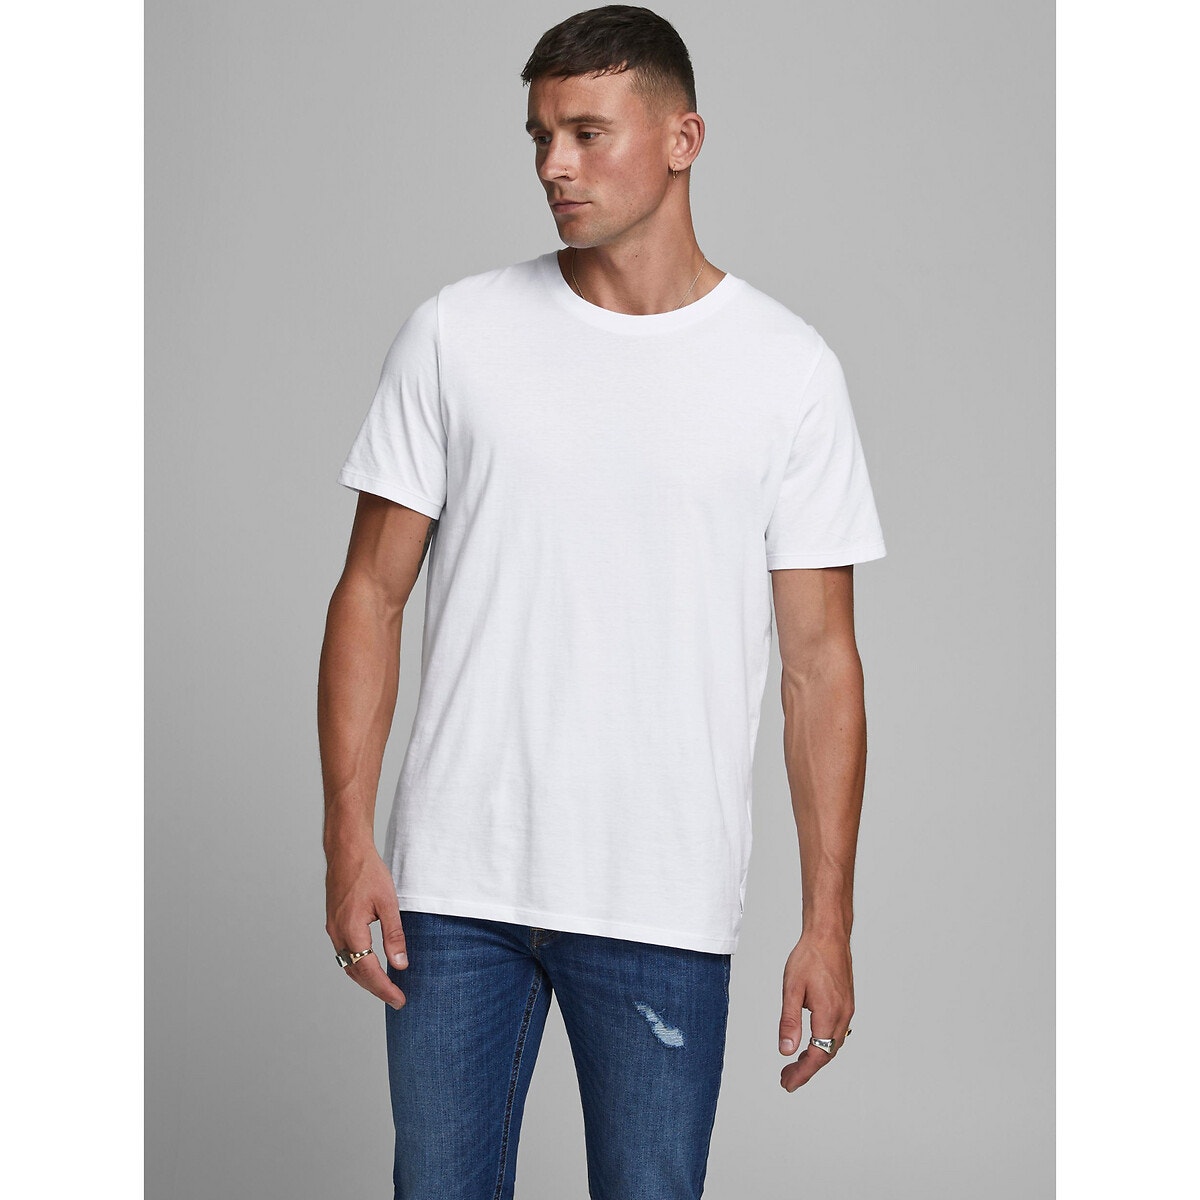 ΑΝΔΡΑΣ | Μπλούζες & Πουκάμισα | T-shirts Μπλούζα με στρογγυλή λαιμόκοψη από βιολογικό βαμβάκι